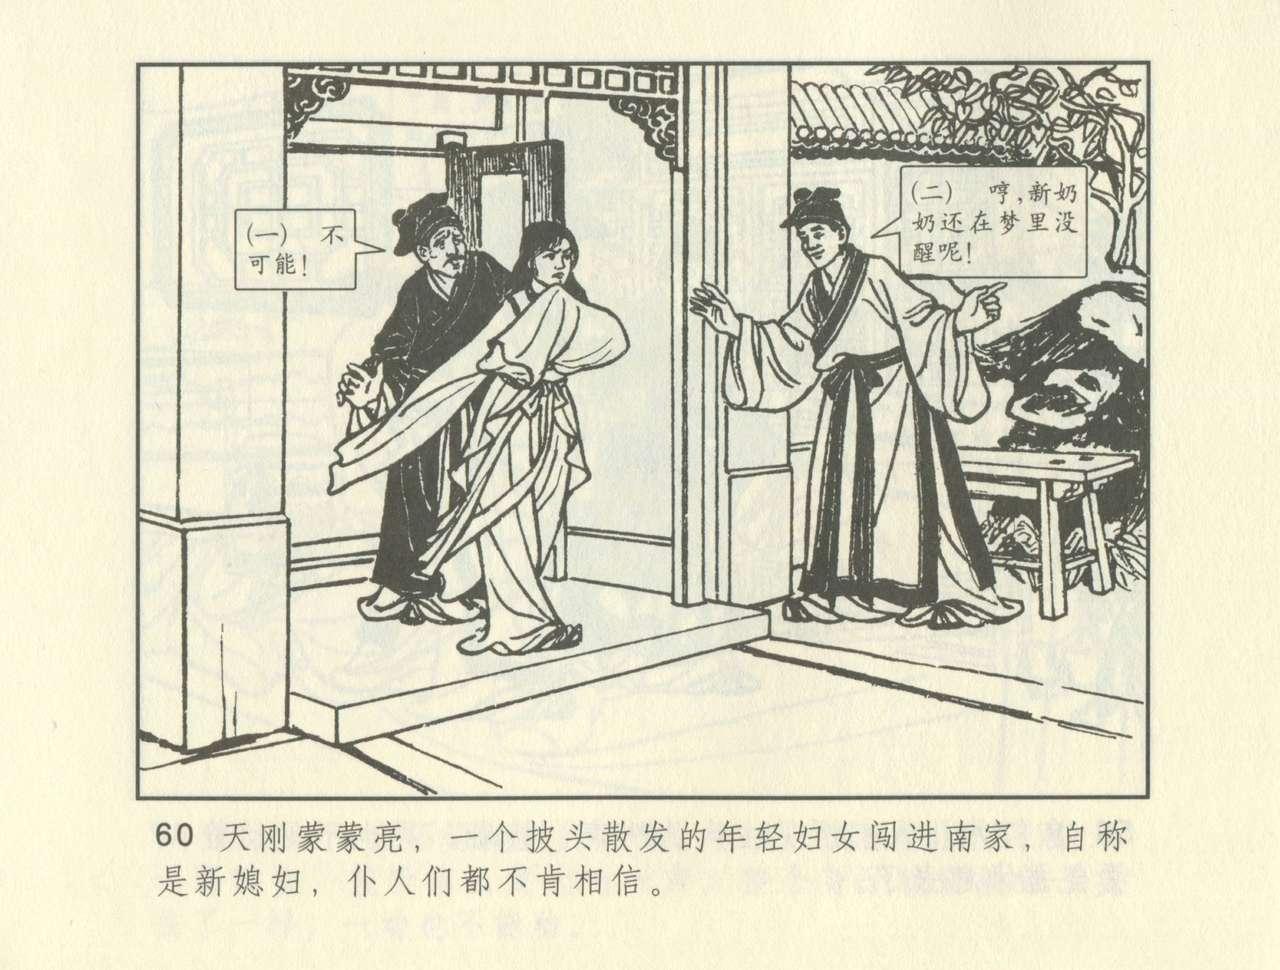 聊斋志异 张玮等绘 天津人民美术出版社 卷二十一 ~ 三十 269